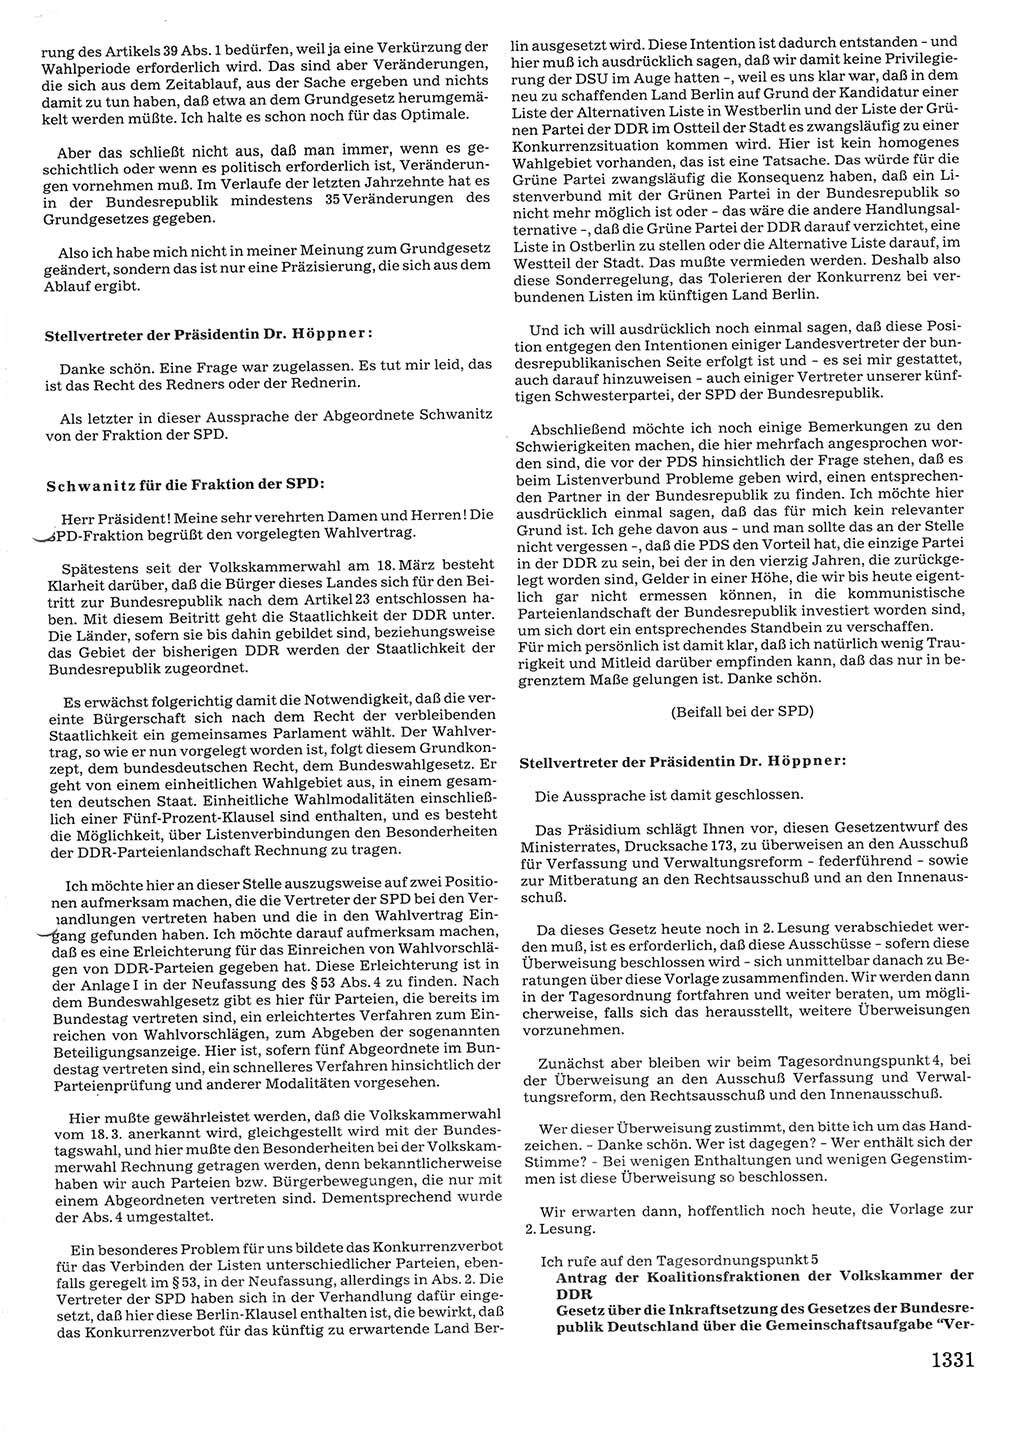 Tagungen der Volkskammer (VK) der Deutschen Demokratischen Republik (DDR), 10. Wahlperiode 1990, Seite 1331 (VK. DDR 10. WP. 1990, Prot. Tg. 1-38, 5.4.-2.10.1990, S. 1331)